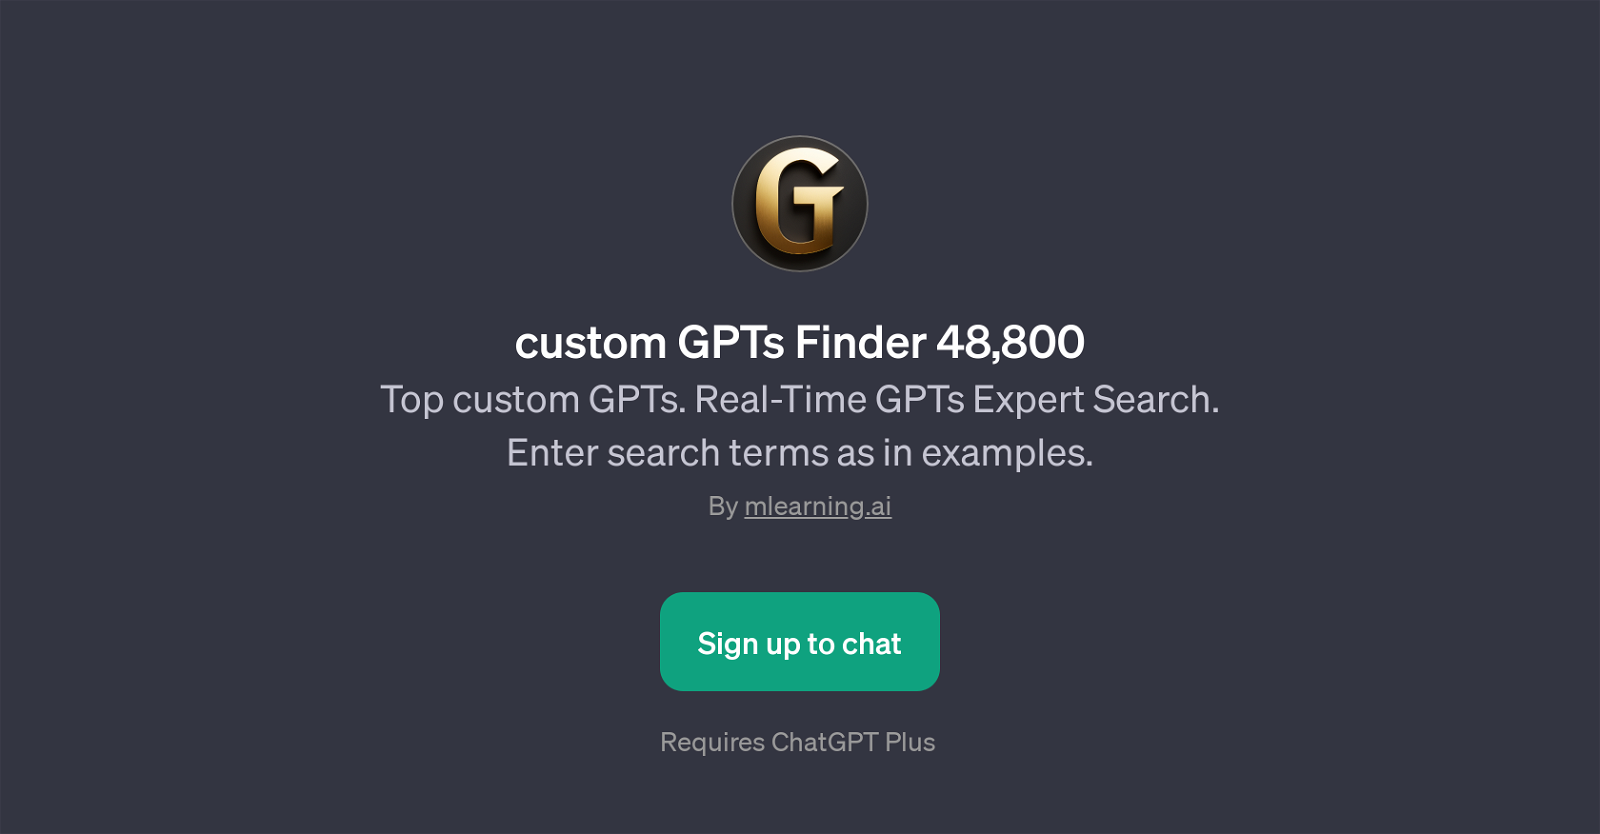 custom GPTs Finder 48,800 website